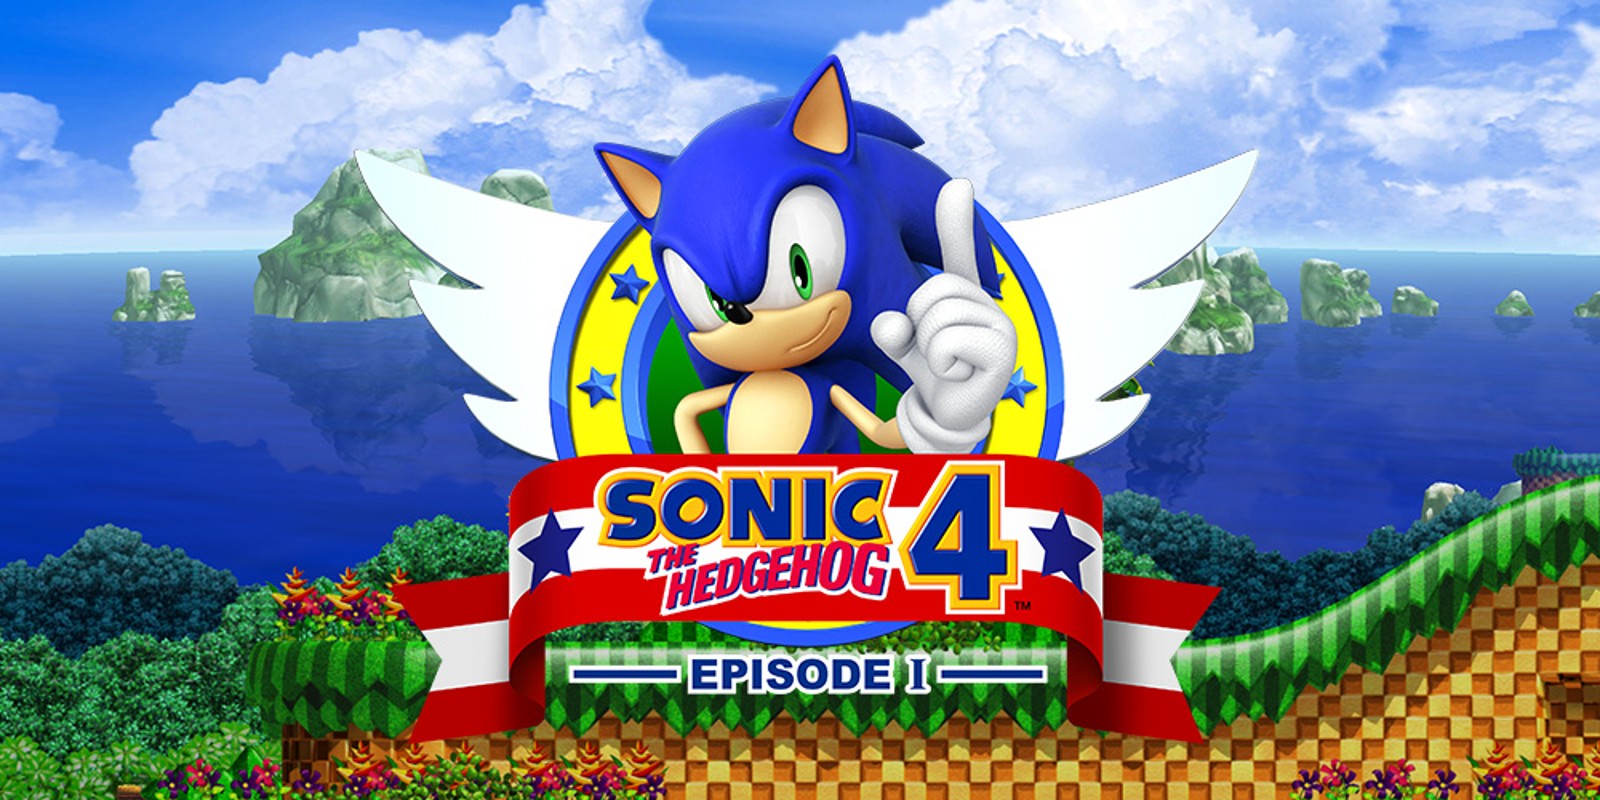 Sonic the hedgehog 4 2. Игра Sonic the Hedgehog 4. Sonic 4 Sega. Sonic the Hedgehog 4 Episode i игра. Sonic 4 Episode 1.